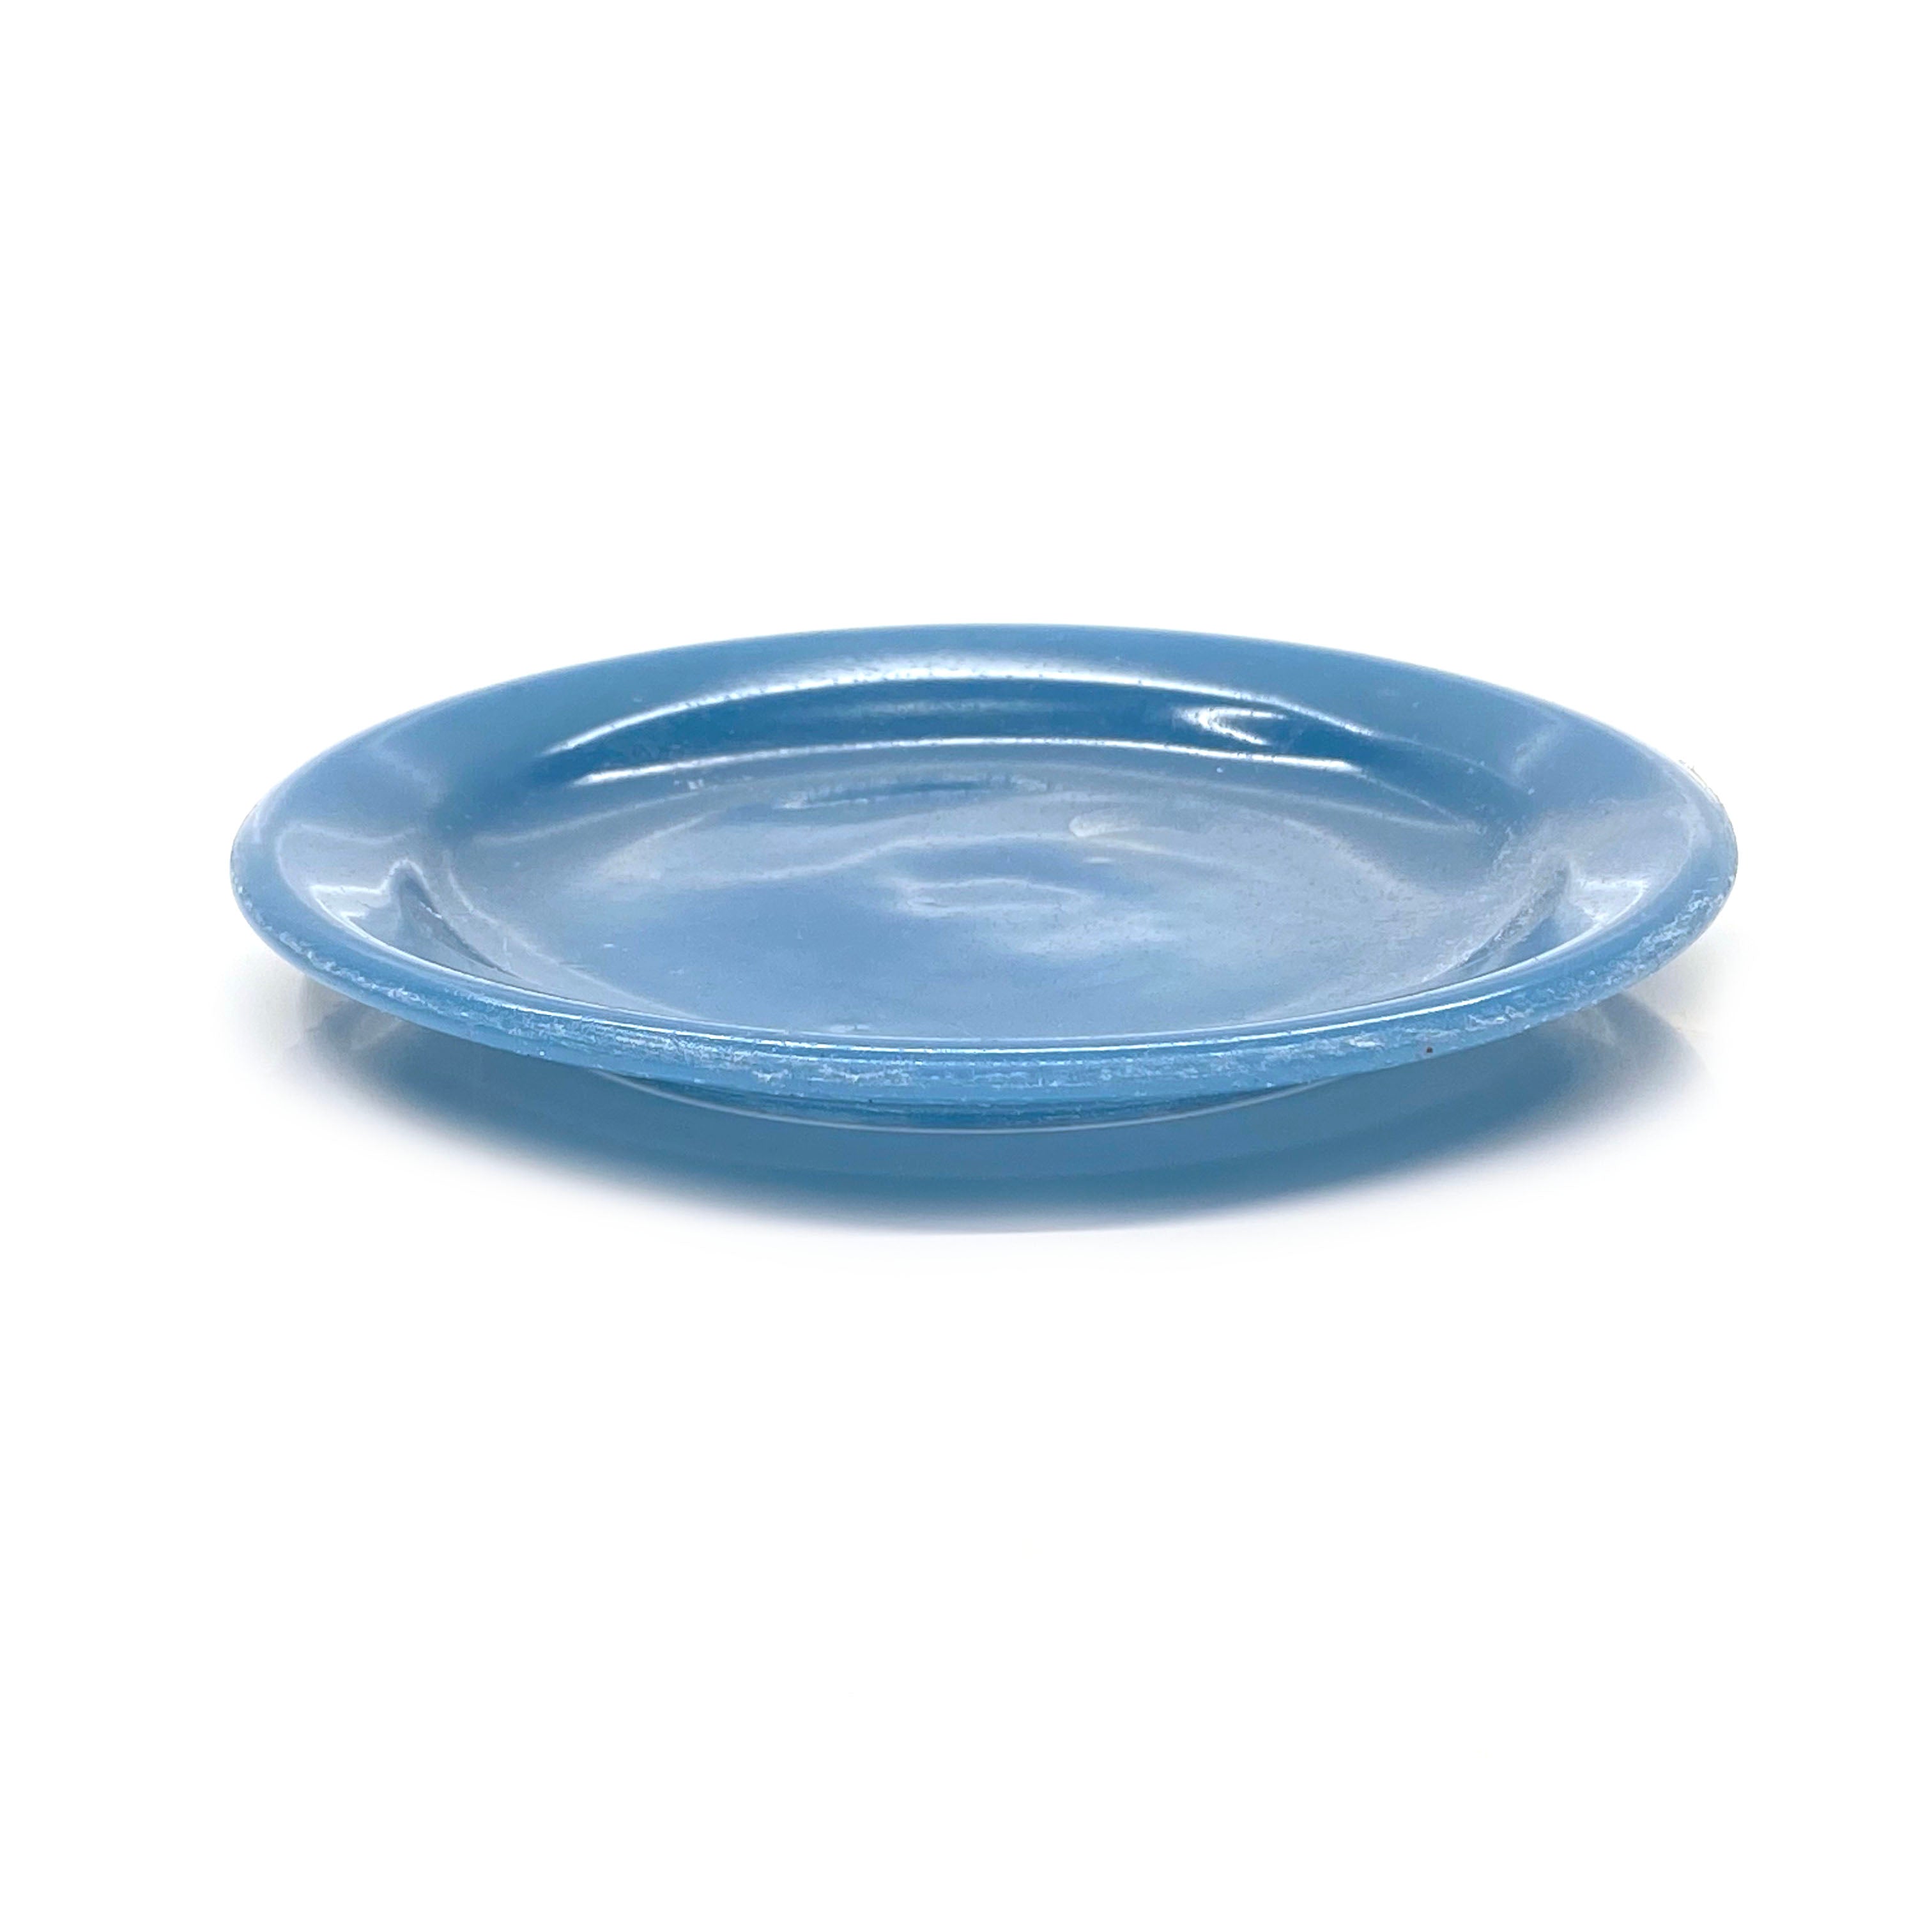 SMASHProps Breakaway Small Dinner Plate Prop - LIGHT BLUE opaque - Light Blue,Opaque